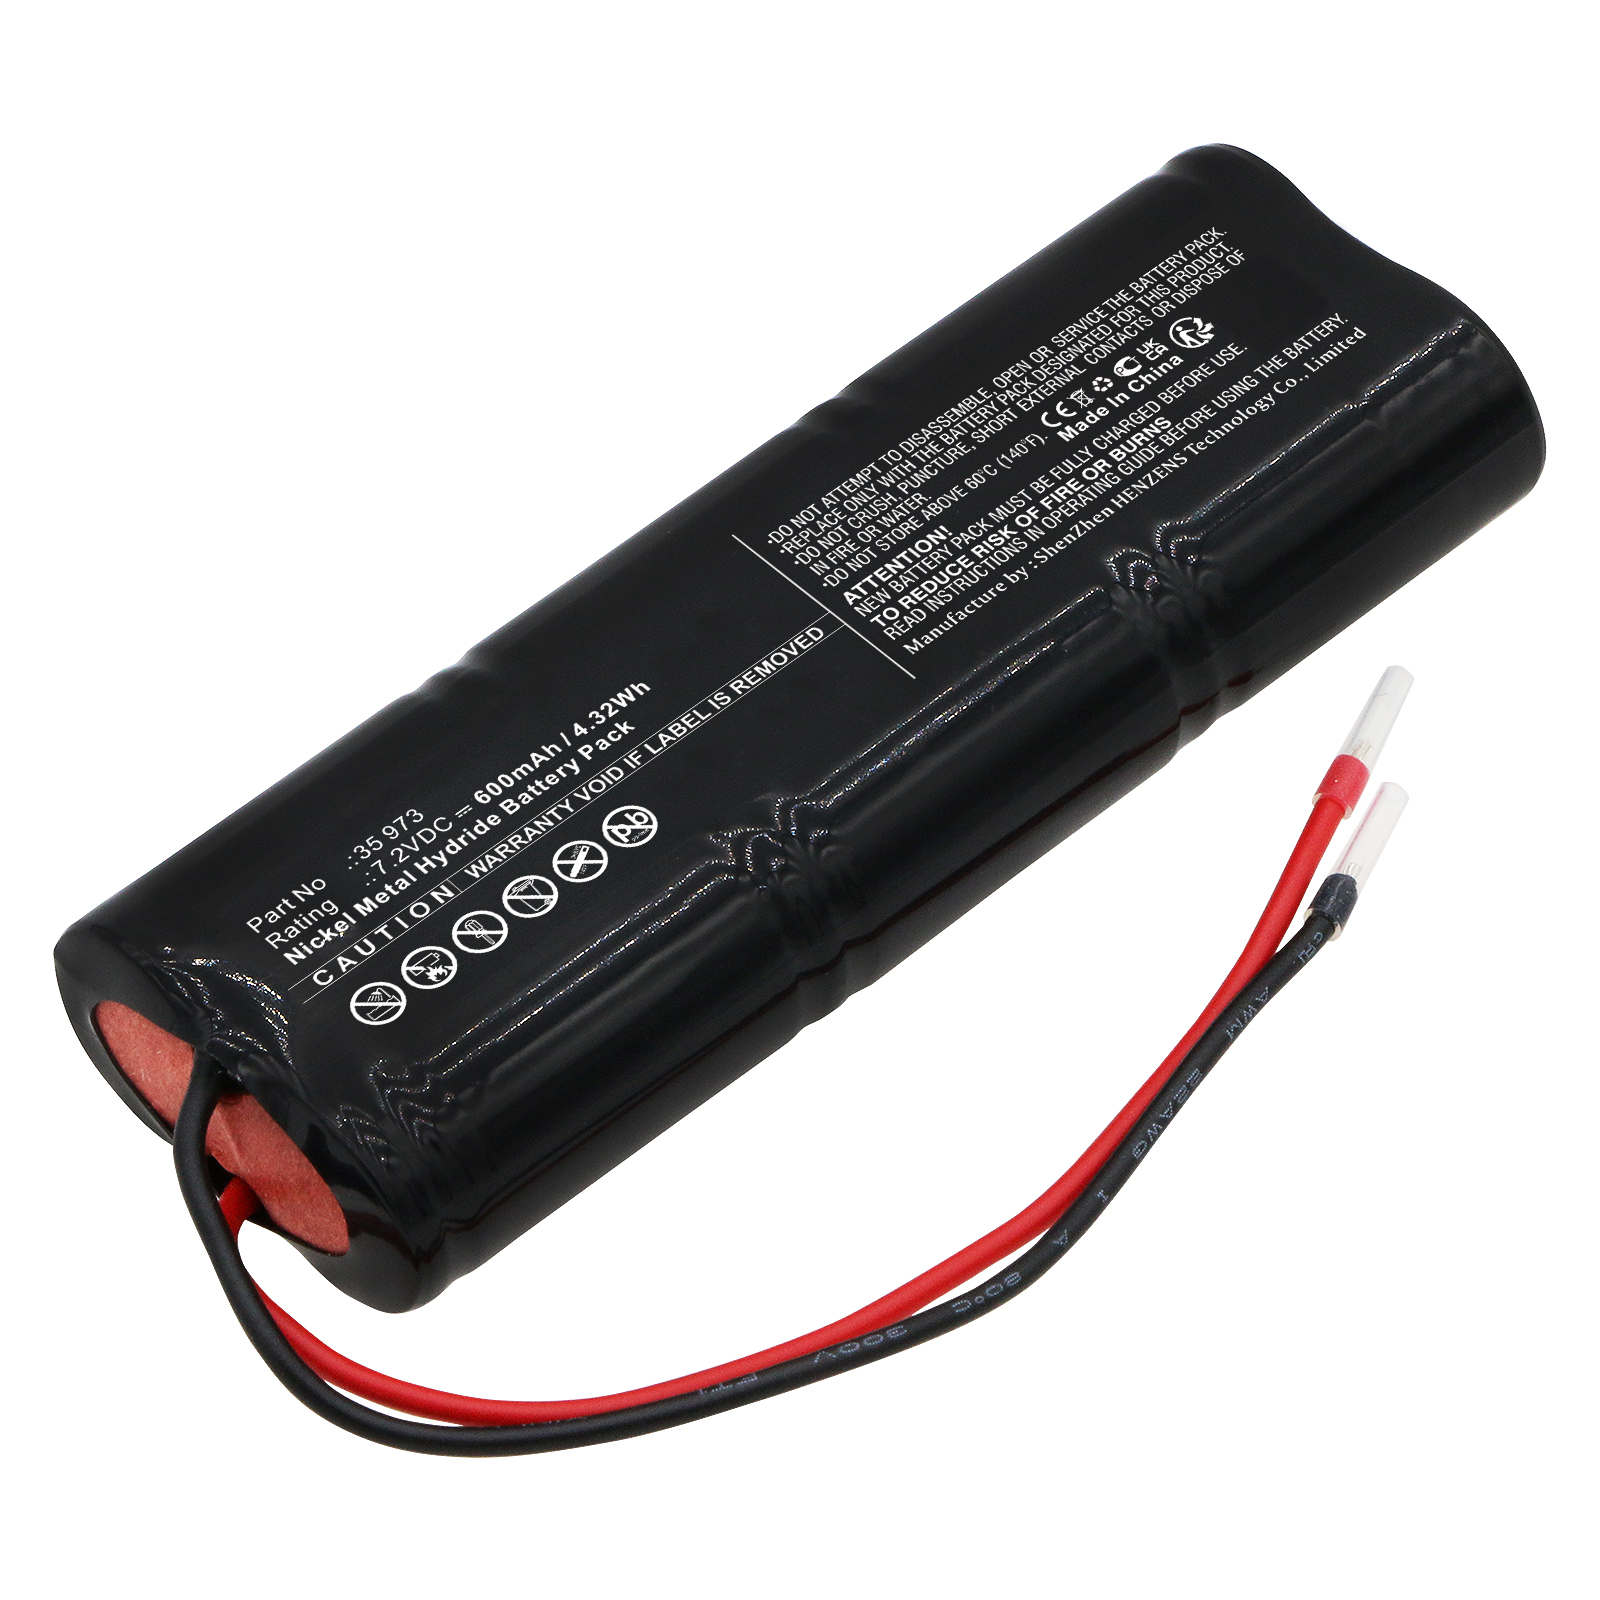 Synergy Digital Emergency Lighting Battery, Compatible with TELENOT 35 973 Emergency Lighting Battery (Ni-MH, 7.2V, 600mAh)